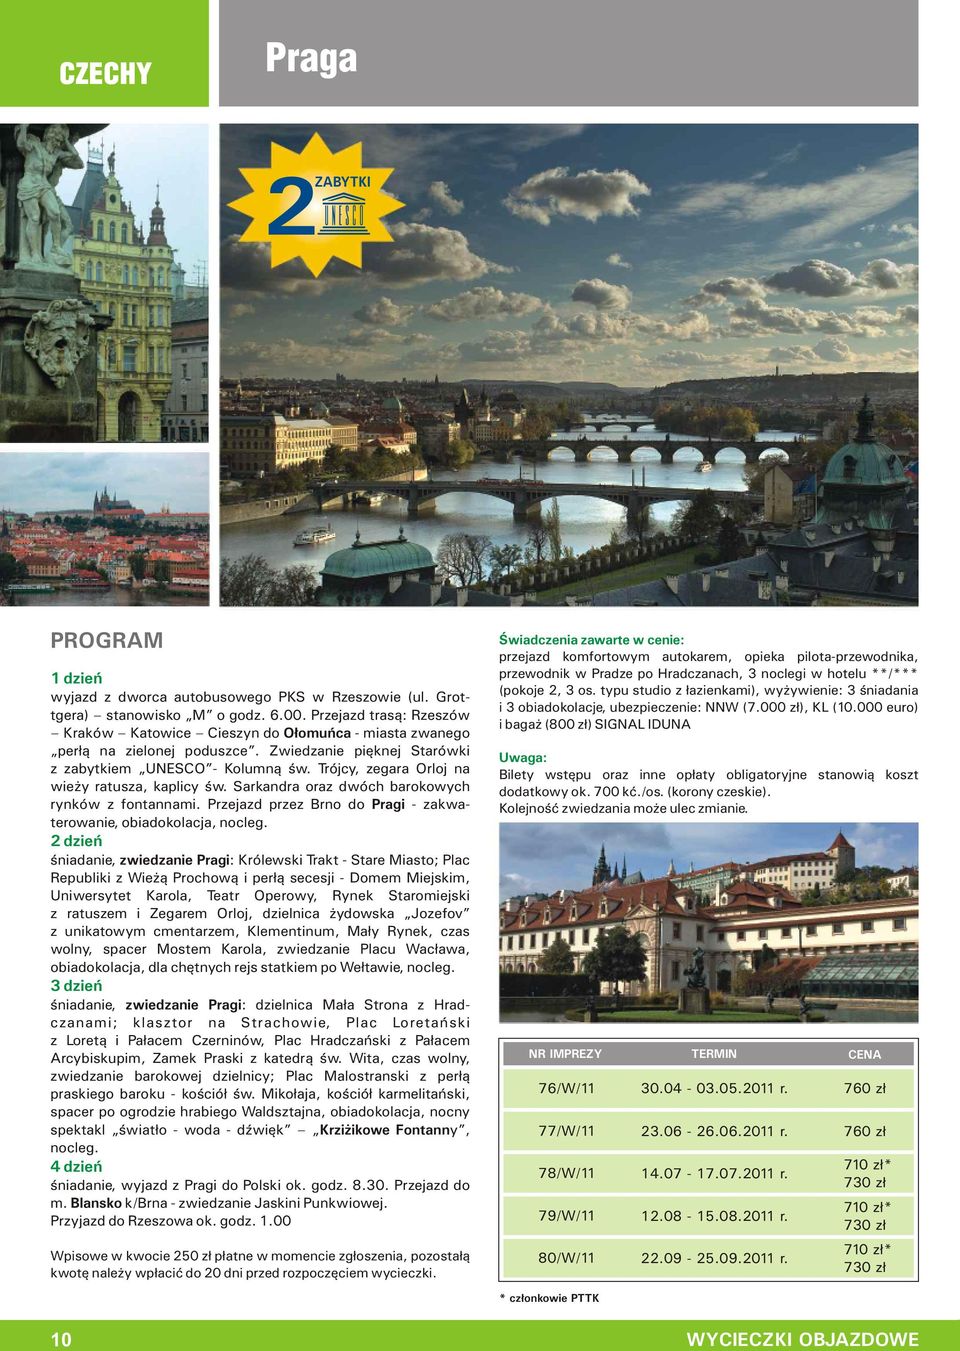 Przejazd przez Brno do Pragi - zakwaterowanie, śniadanie, zwiedzanie Pragi: Królewski Trakt - Stare Miasto; Plac Republiki z Wieżą Prochową i perłą secesji - Domem Miejskim, Uniwersytet Karola, Teatr